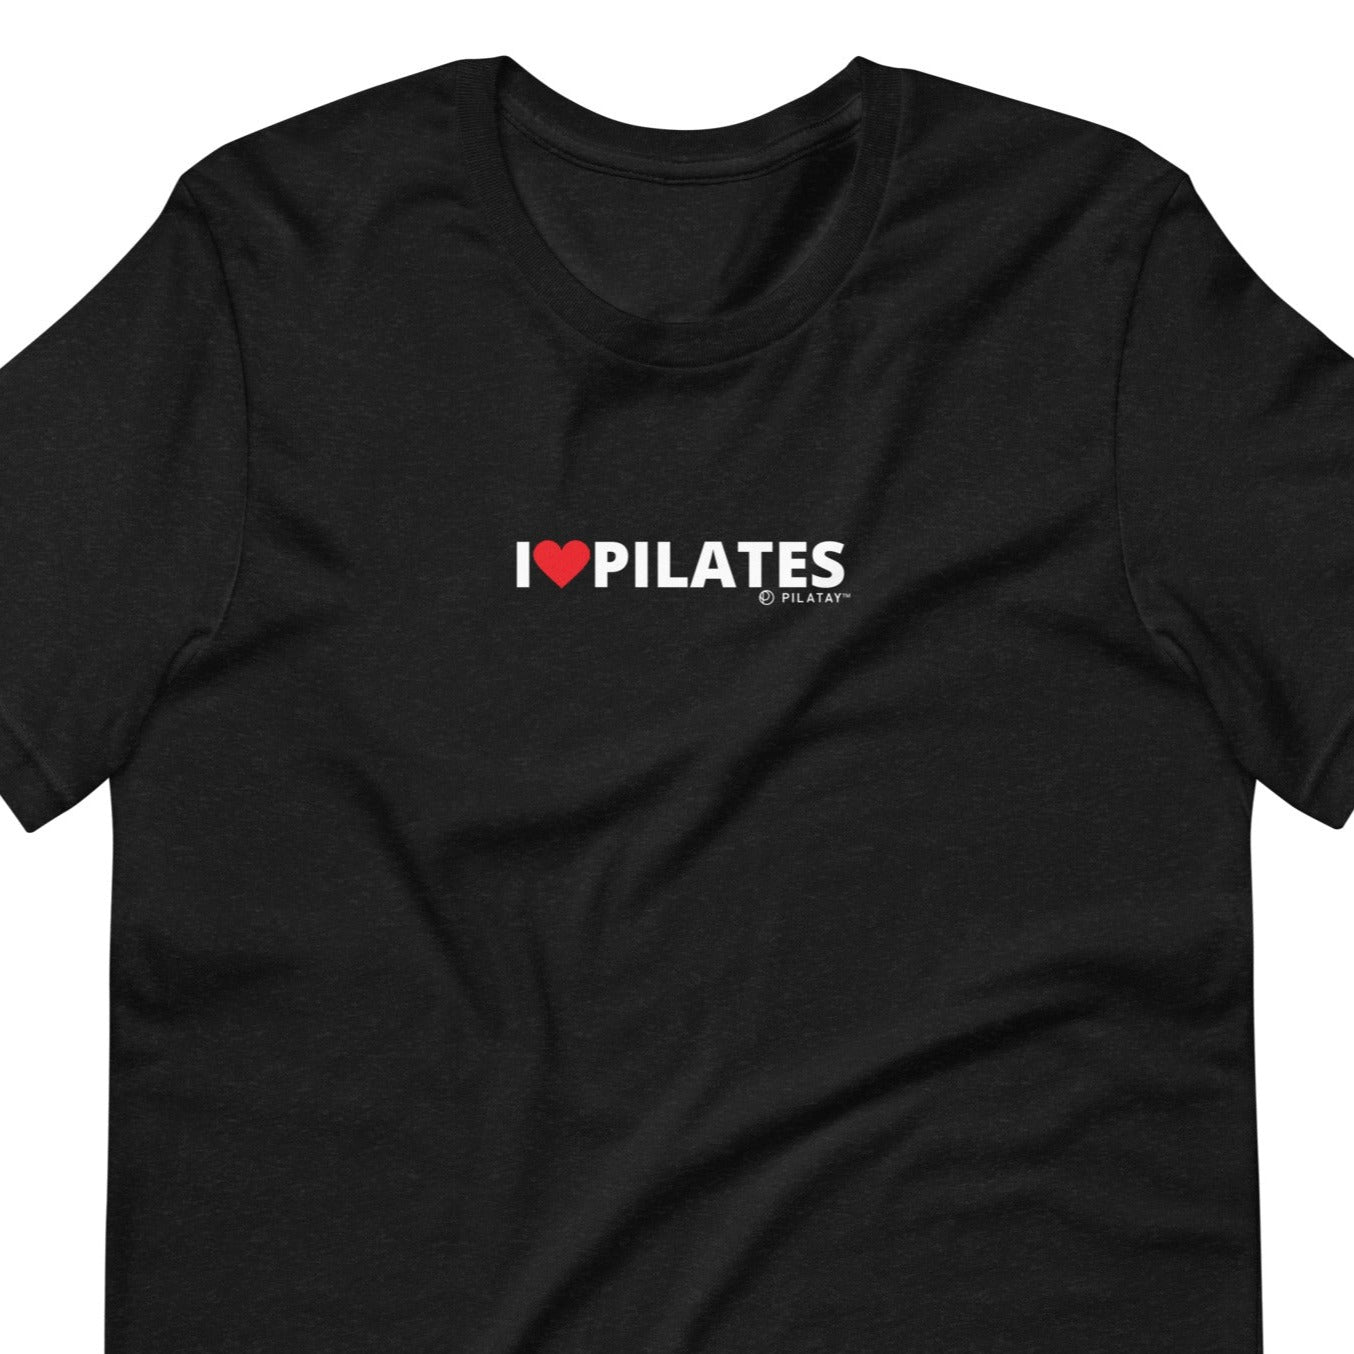 But first pilates plank heart love fitness T-Shirt Medium Dark Gray 